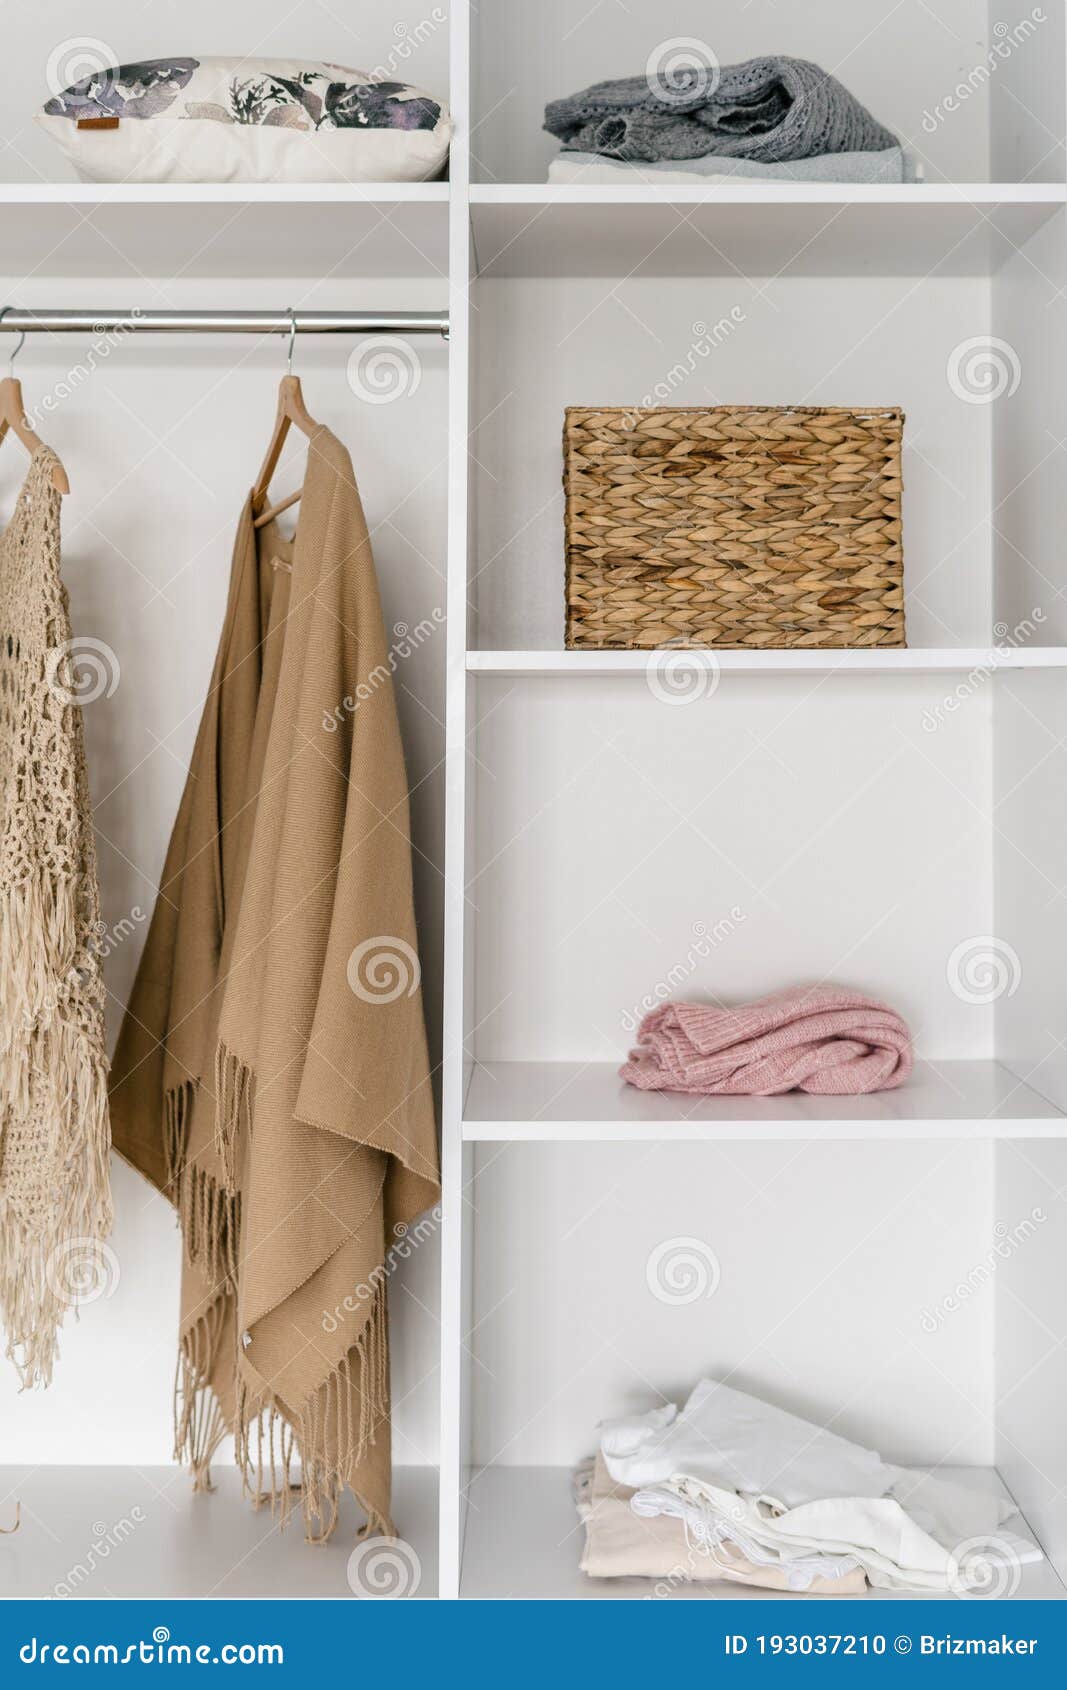 https://thumbs.dreamstime.com/z/armario-grande-y-moderno-en-el-vestidor-foto-vertical-de-un-con-accesorios-uso-femenino-caja-textil-193037210.jpg